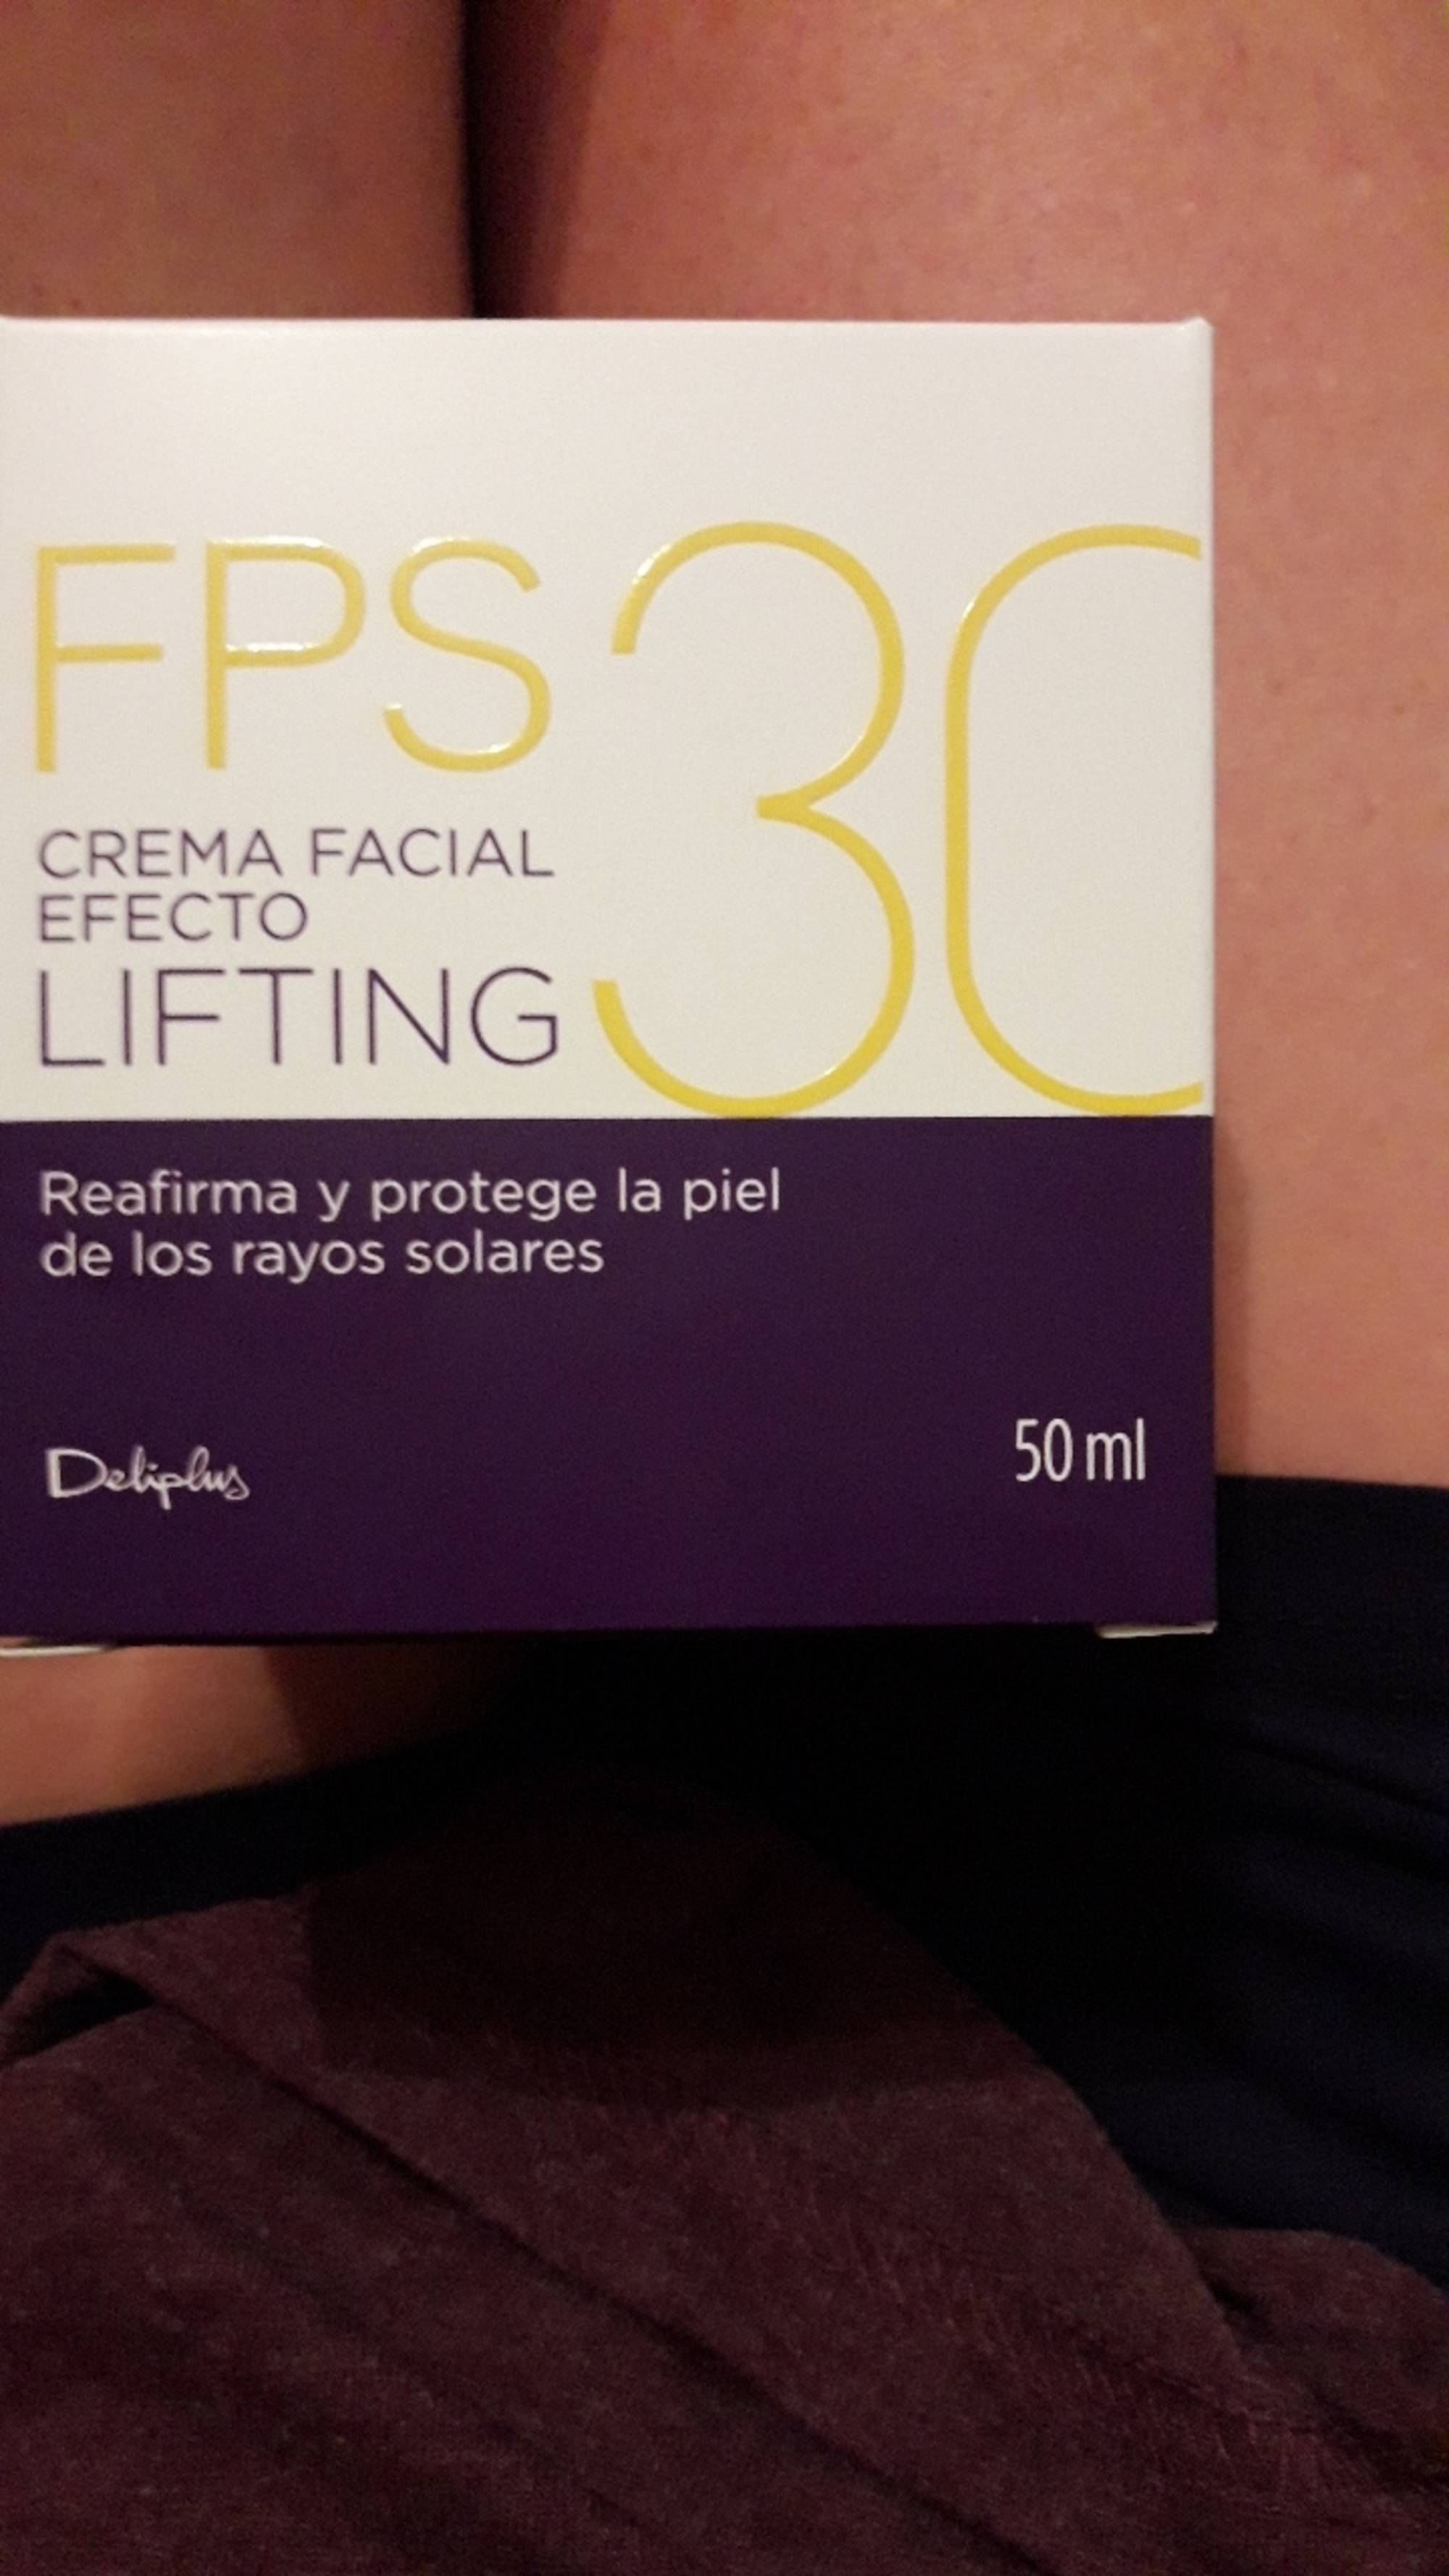 DELIPLUS - Crema facial efecto lifting FPS 30